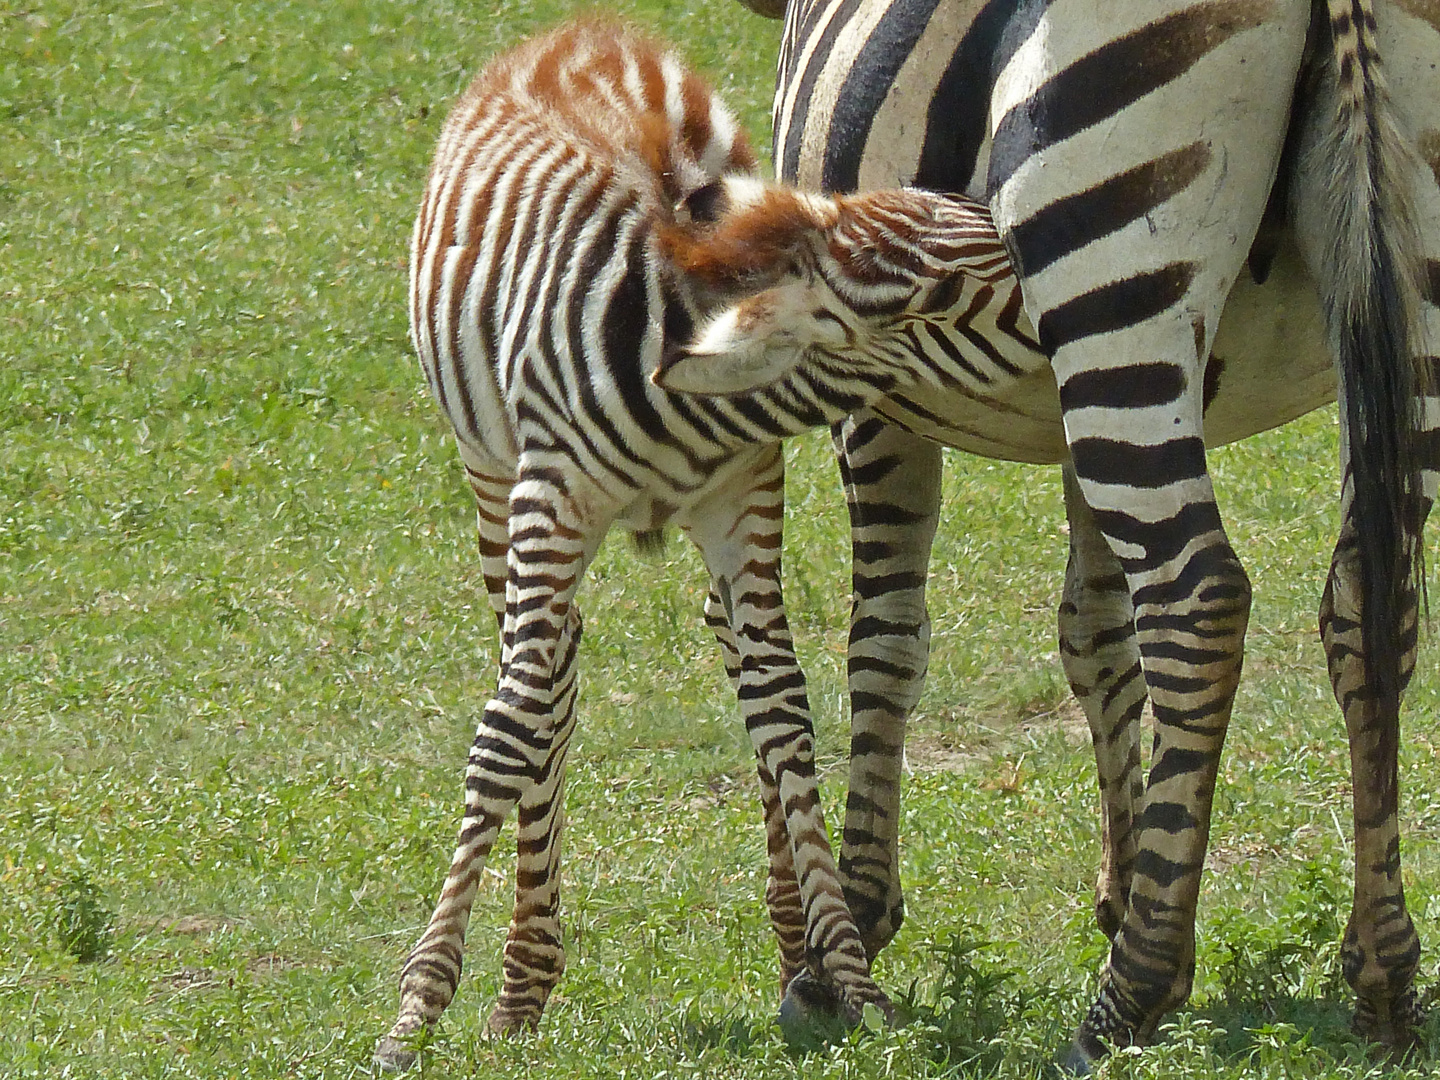 Zebra nursing